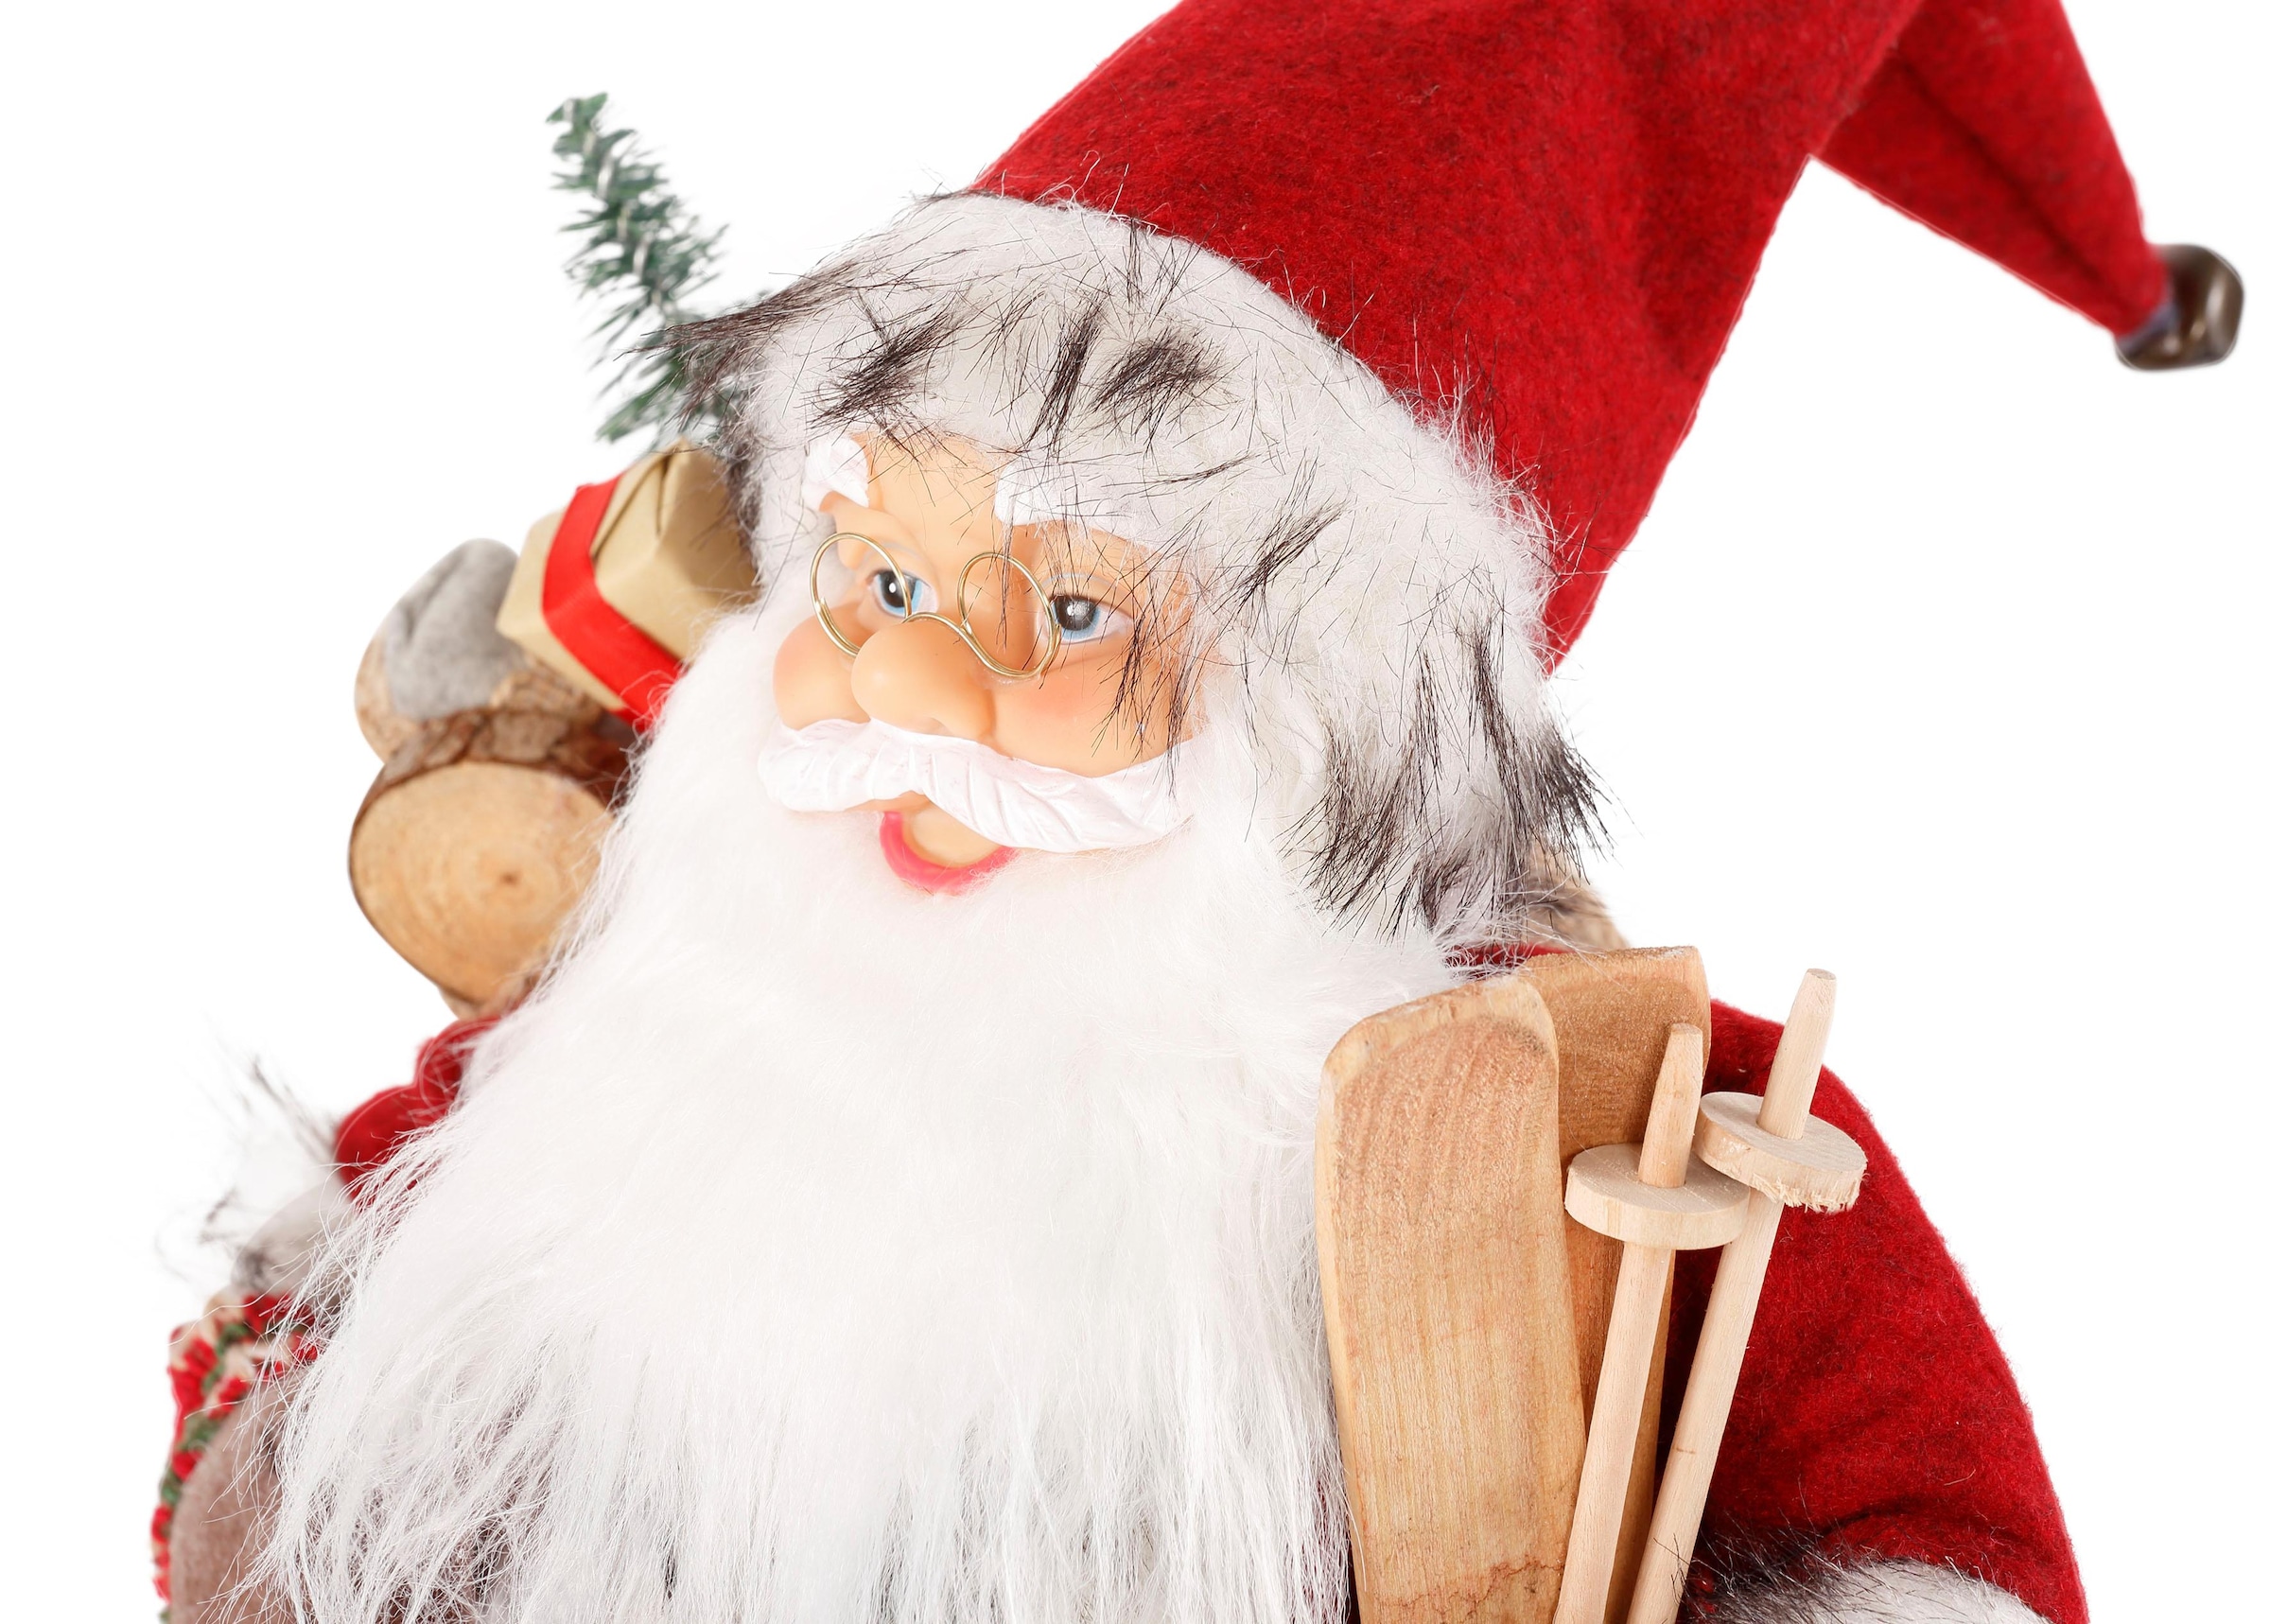 HOSSNER - HOMECOLLECTION Weihnachtsmann »Santa mit Skiern unter dem Arm und  Geschenken«, Weihnachtsdeko, Dekofigur, Weihnachtsfigur auf Rechnung kaufen